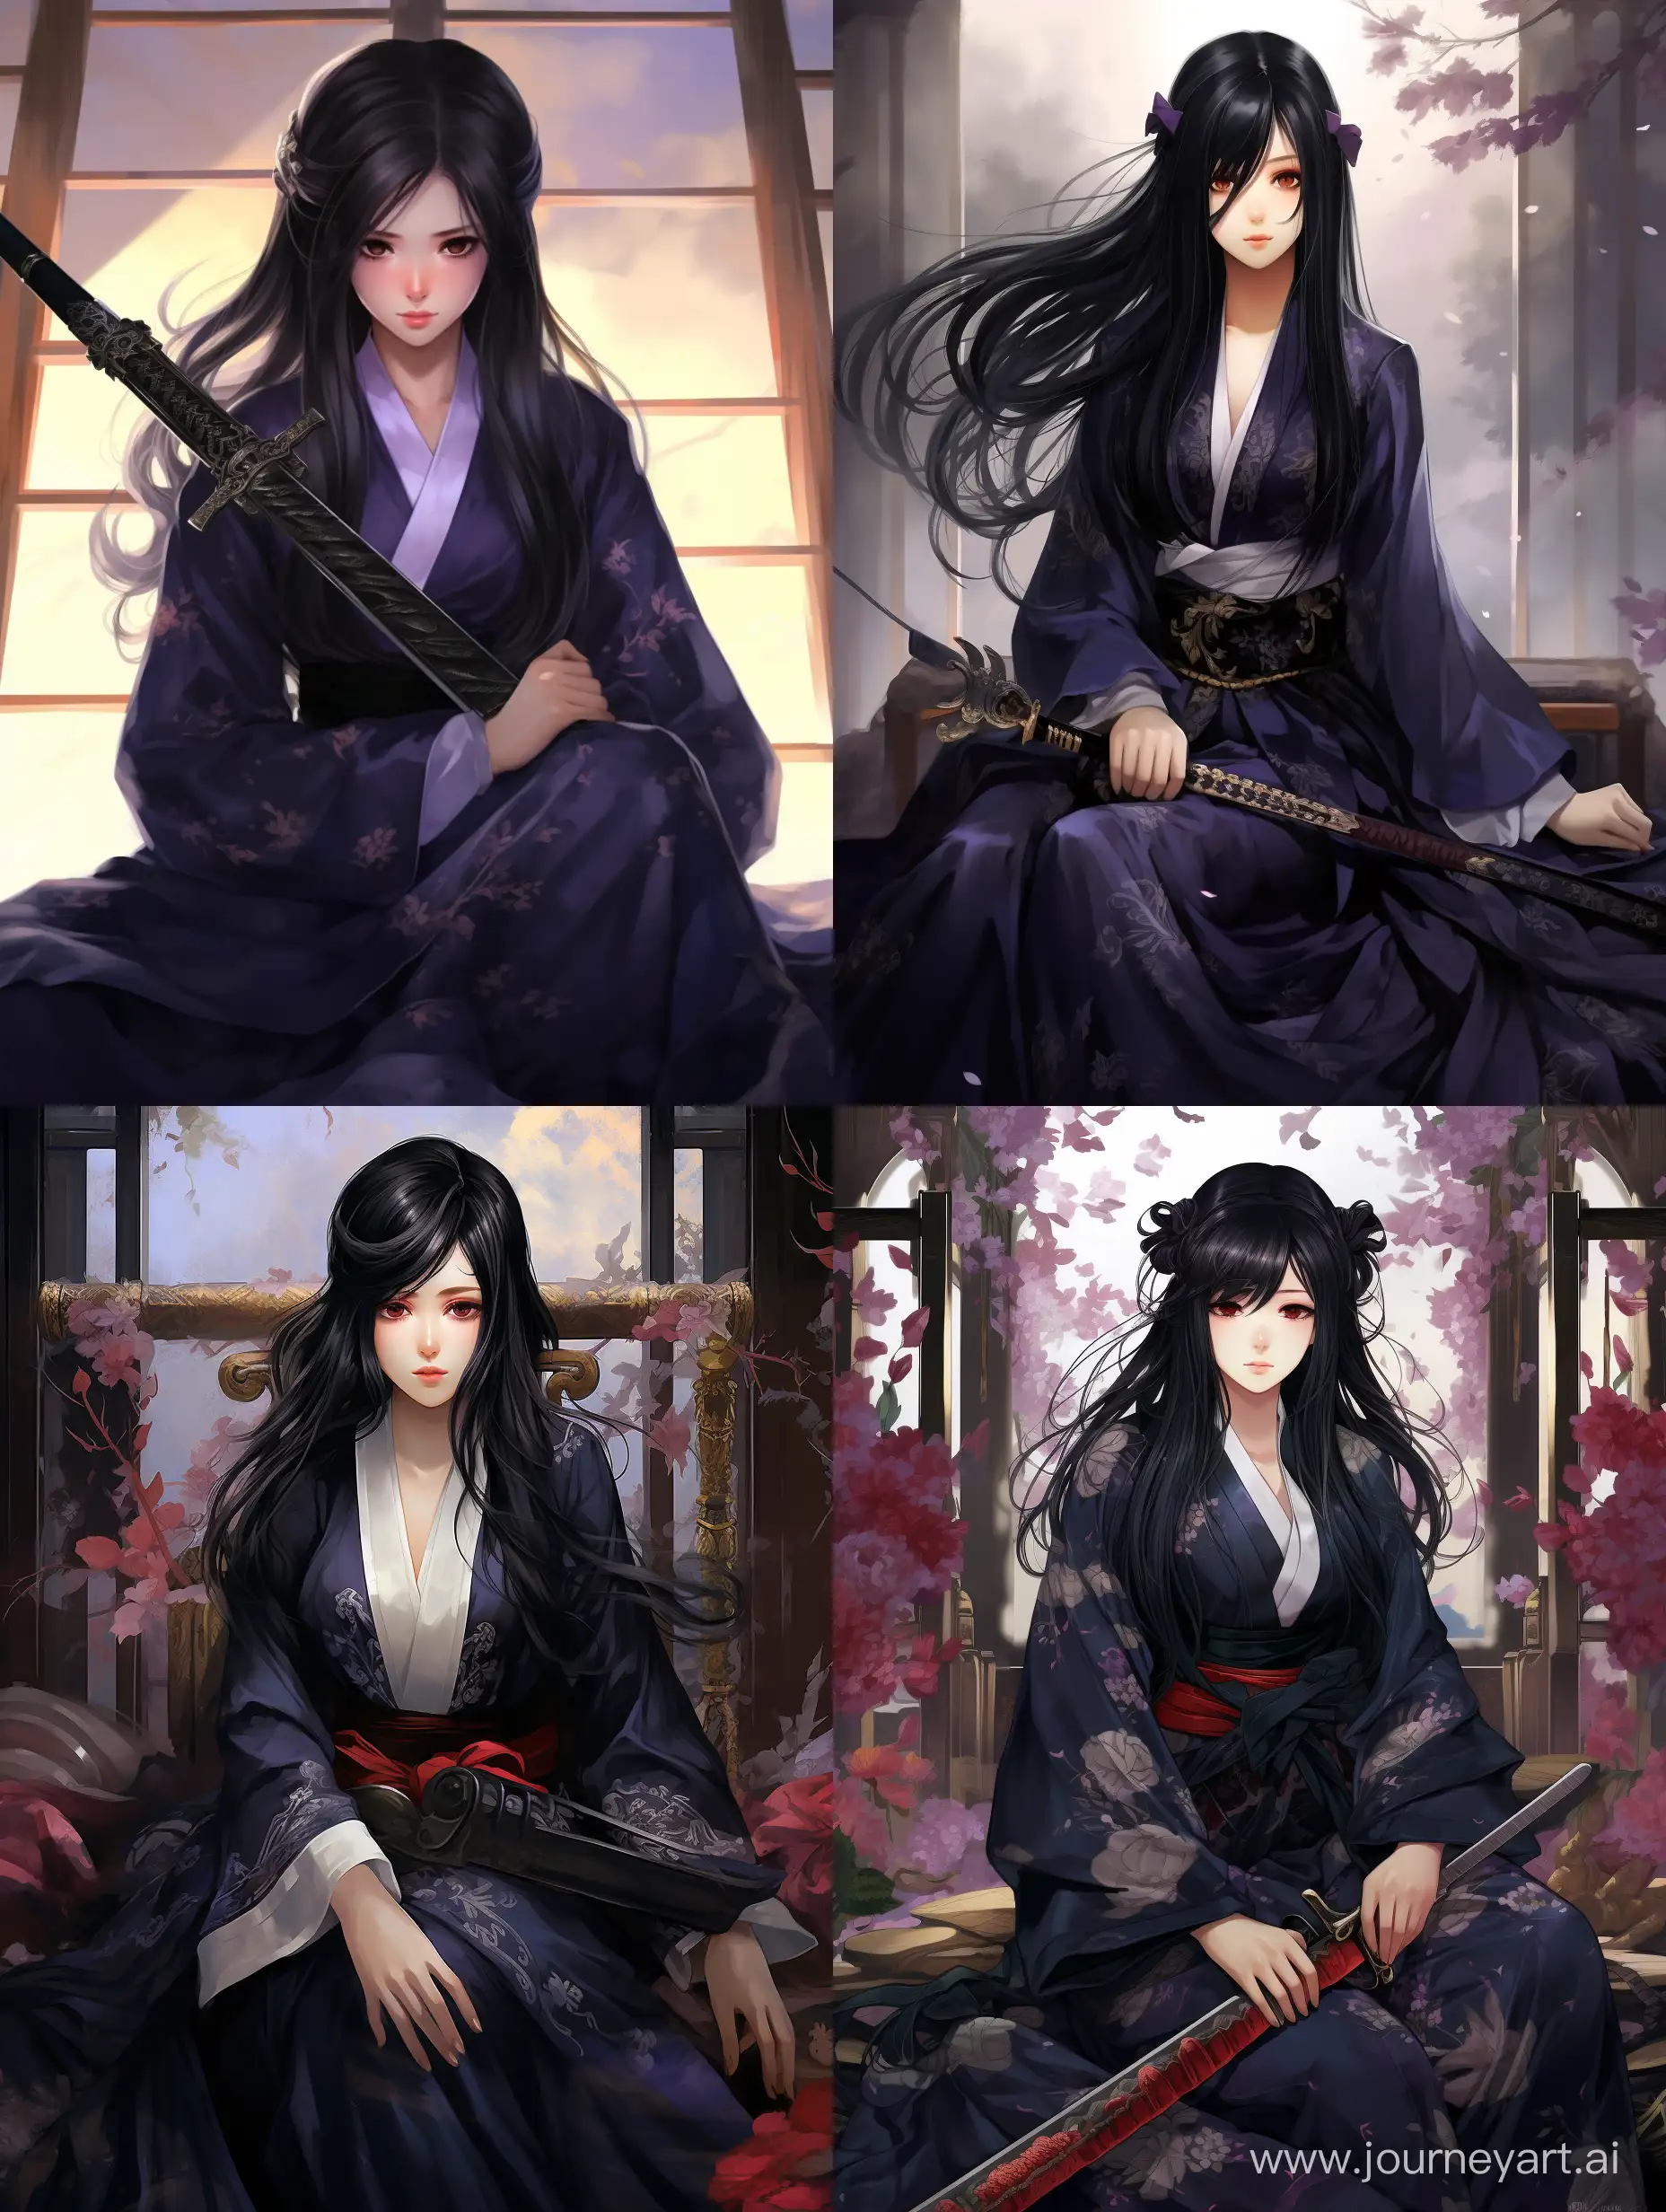 Confident-BlackHaired-Girl-in-Traditional-Kimono-with-Katana-Anime-Jujutsu-Kaisen-Style